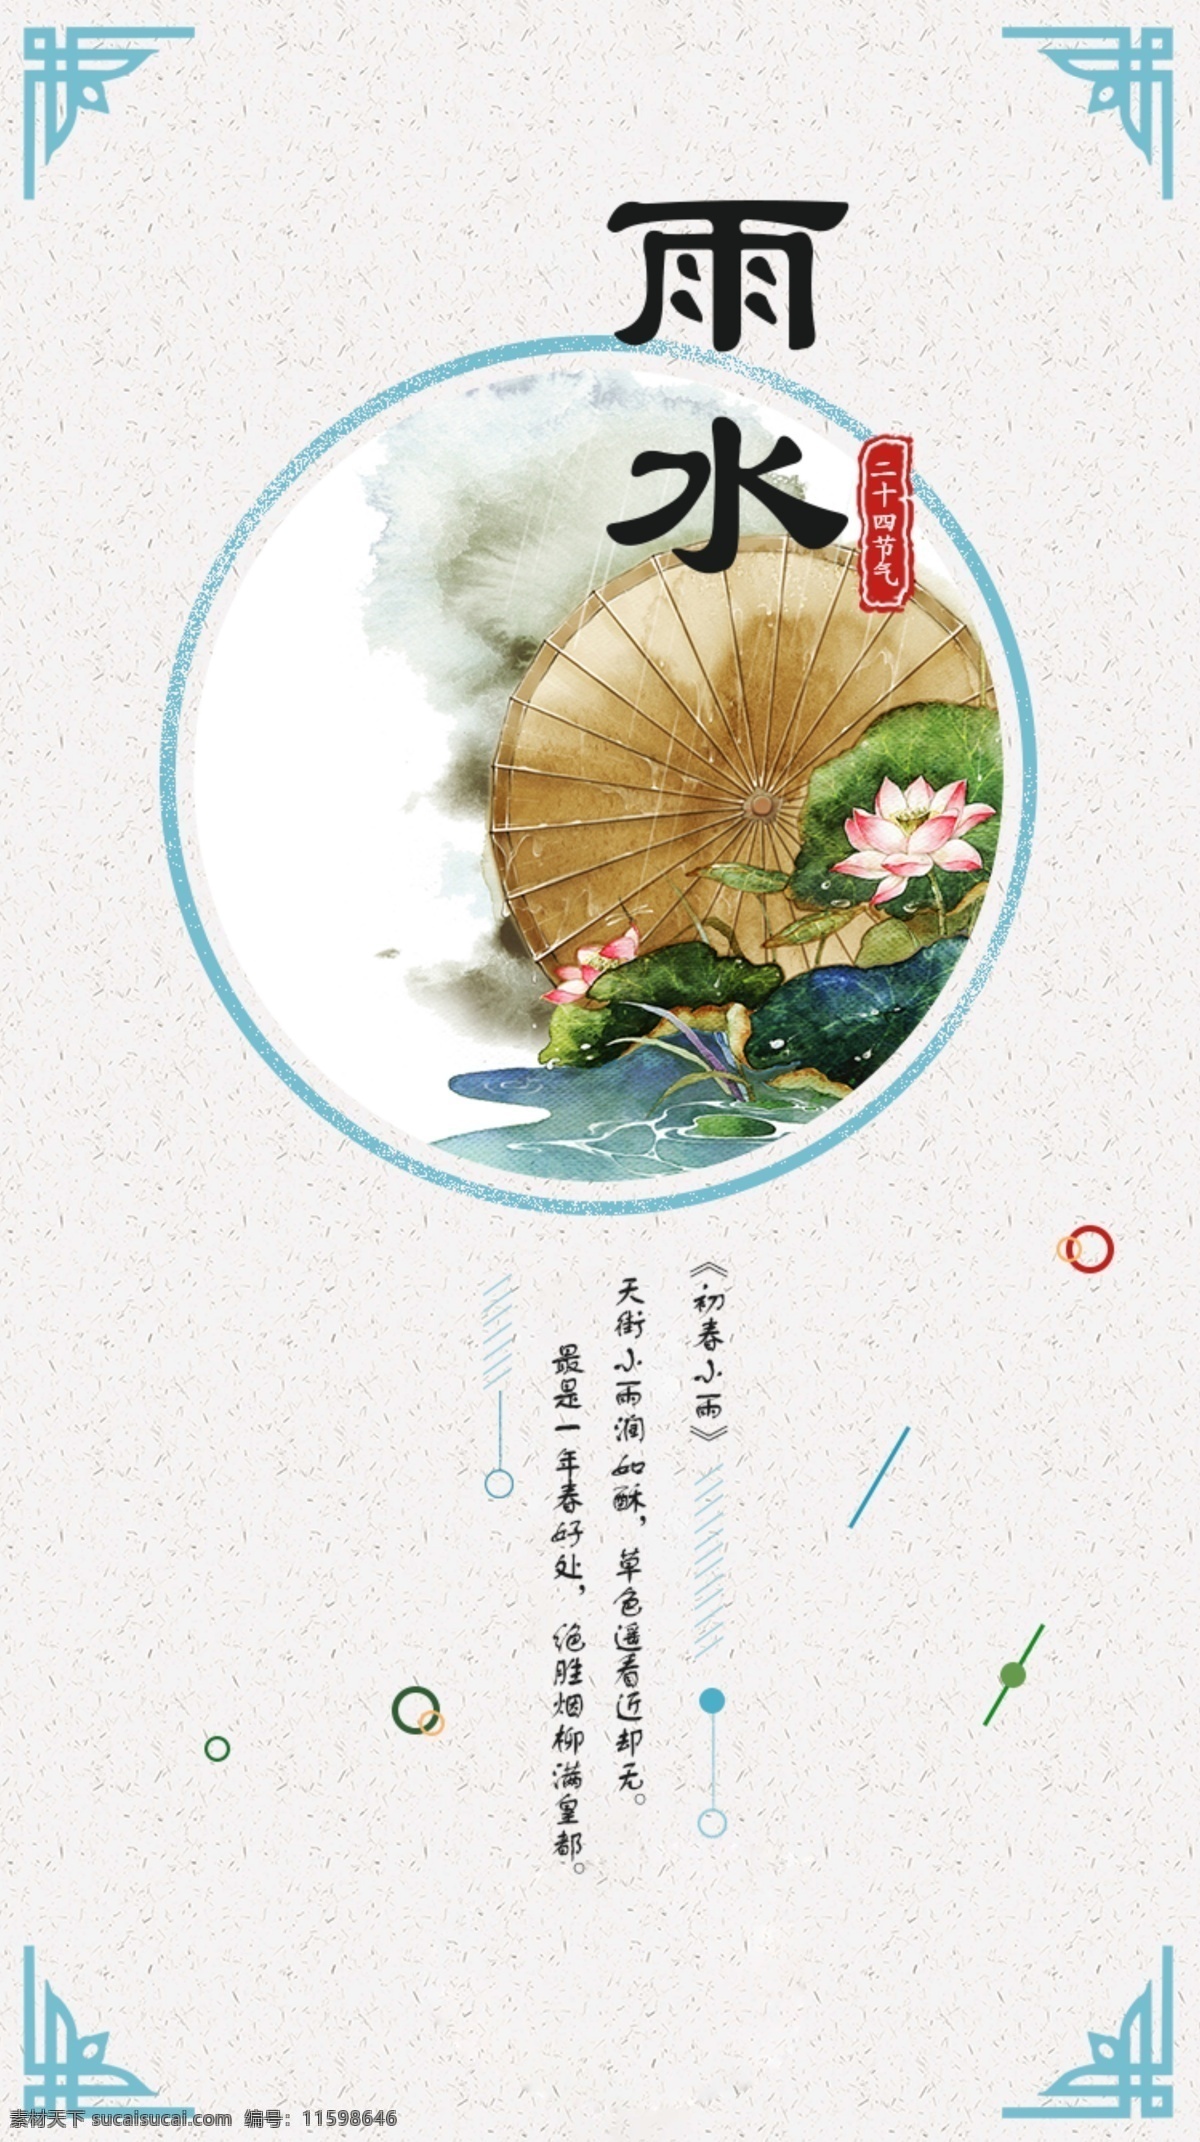 节气 雨水 清新 古典 手机 图 中国传统文化 传统节日 诗词 24节气